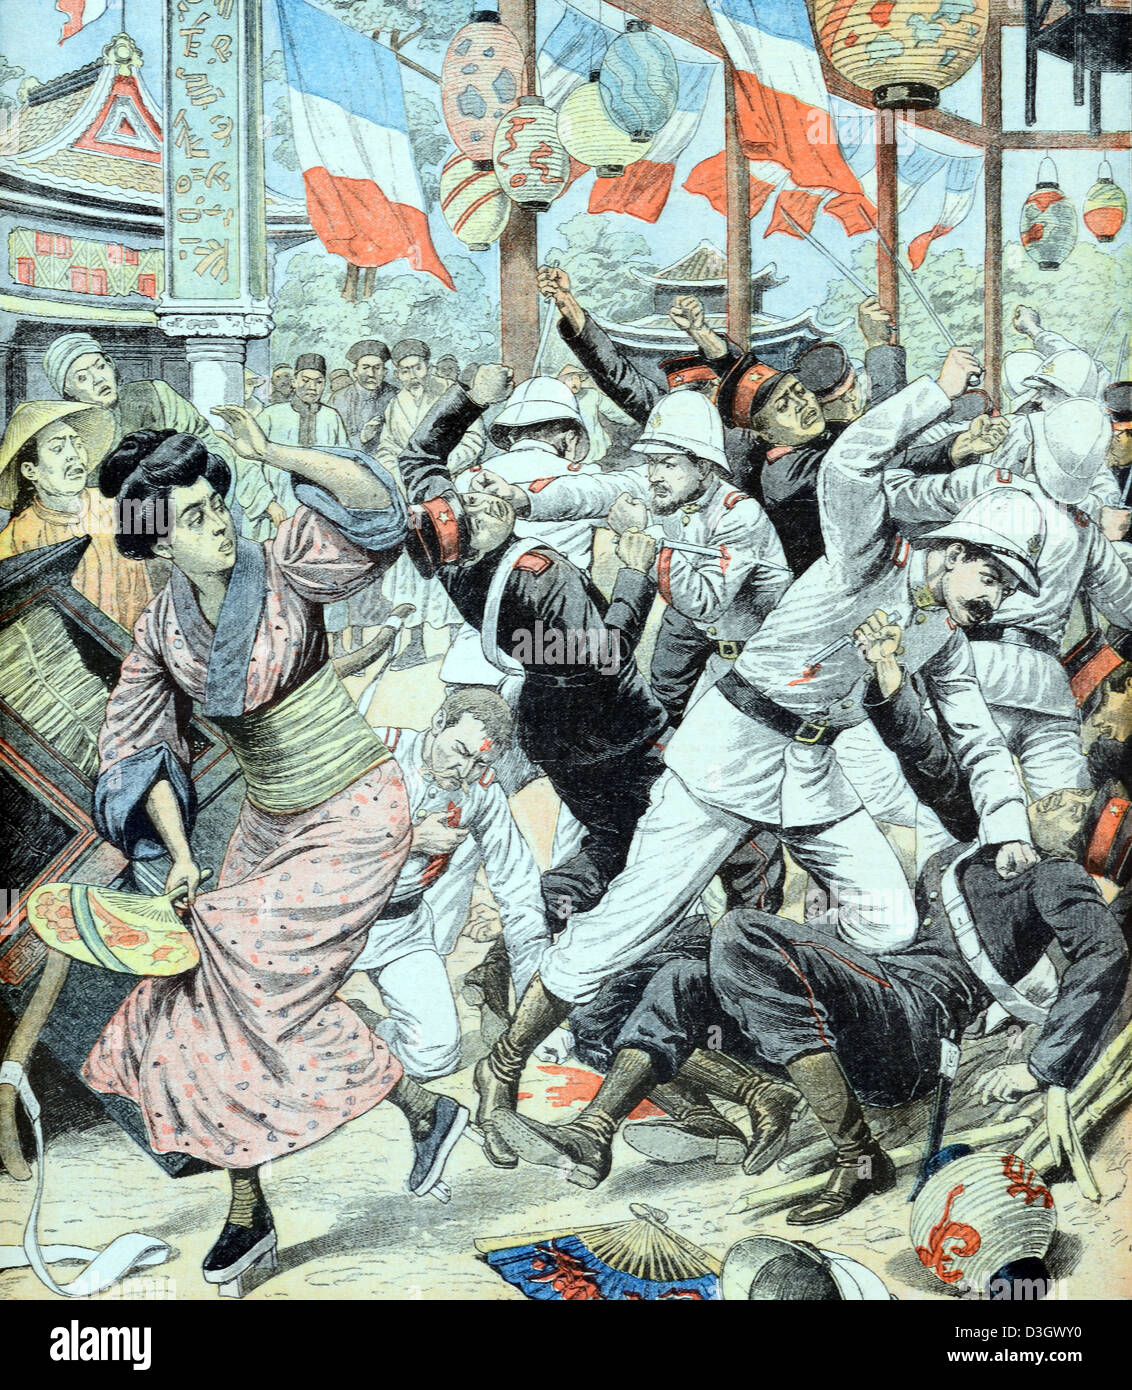 Konfrontation zwischen französischen und japanischen Truppen oder Soldaten in China (Juli 1904) Vintage Illustration oder Gravur Stockfoto